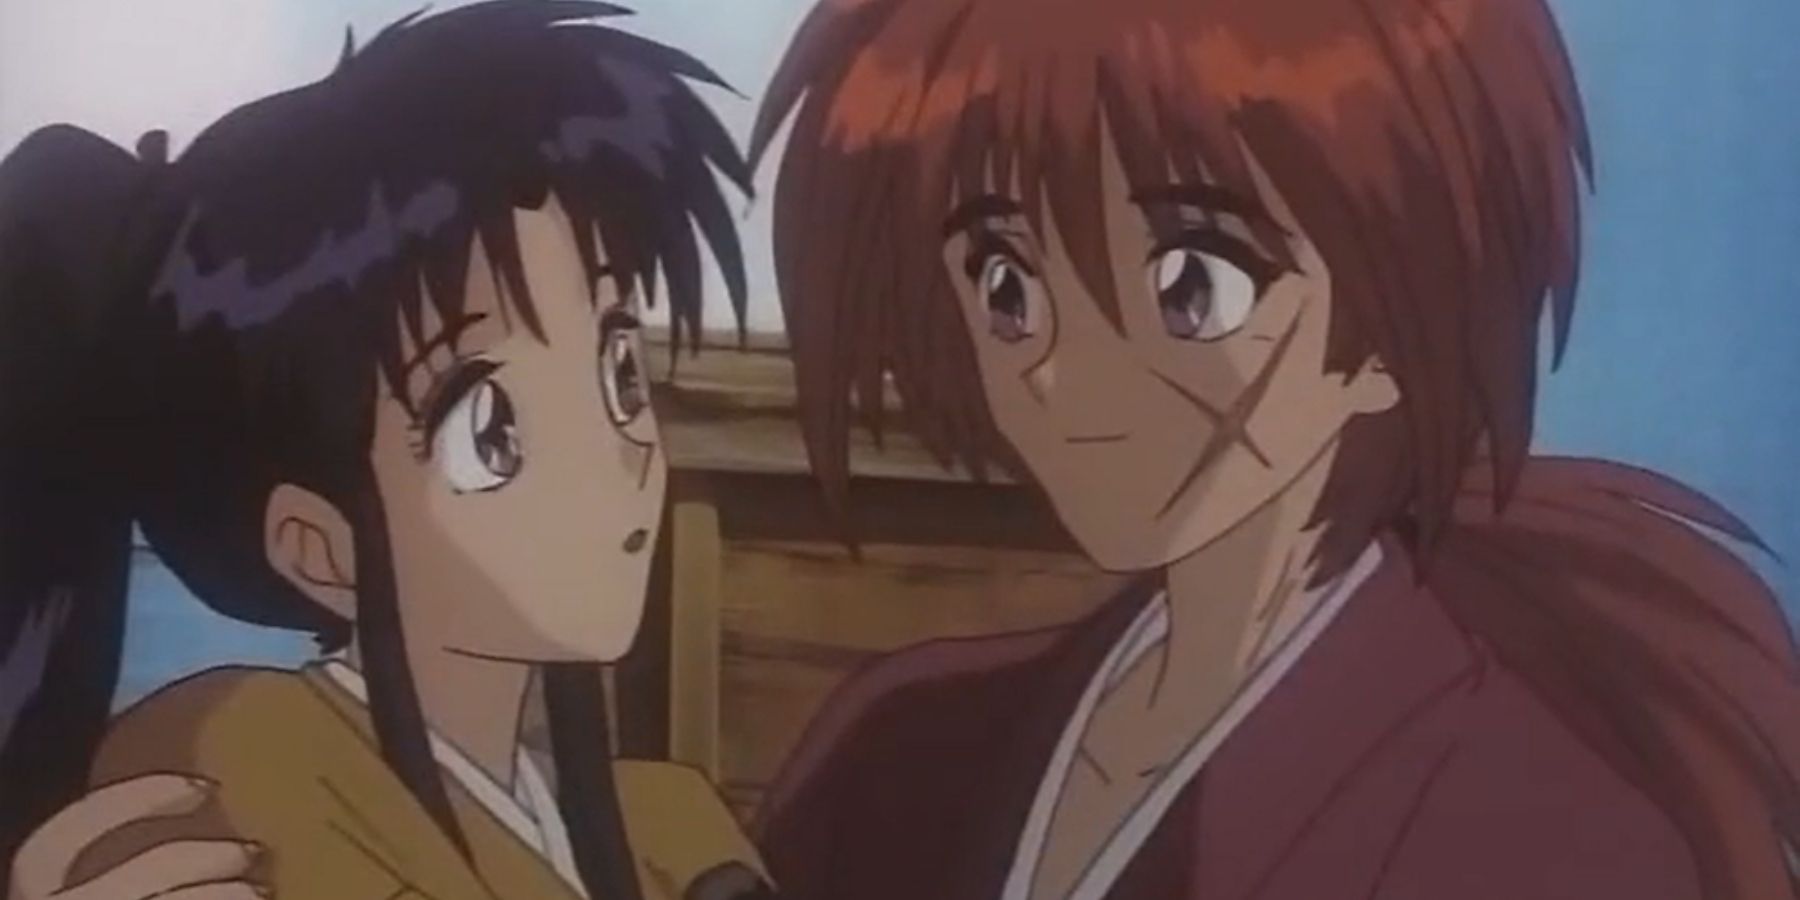 Kenshin Himura And Kaoru Kamiya (Rurouni Kenshin)